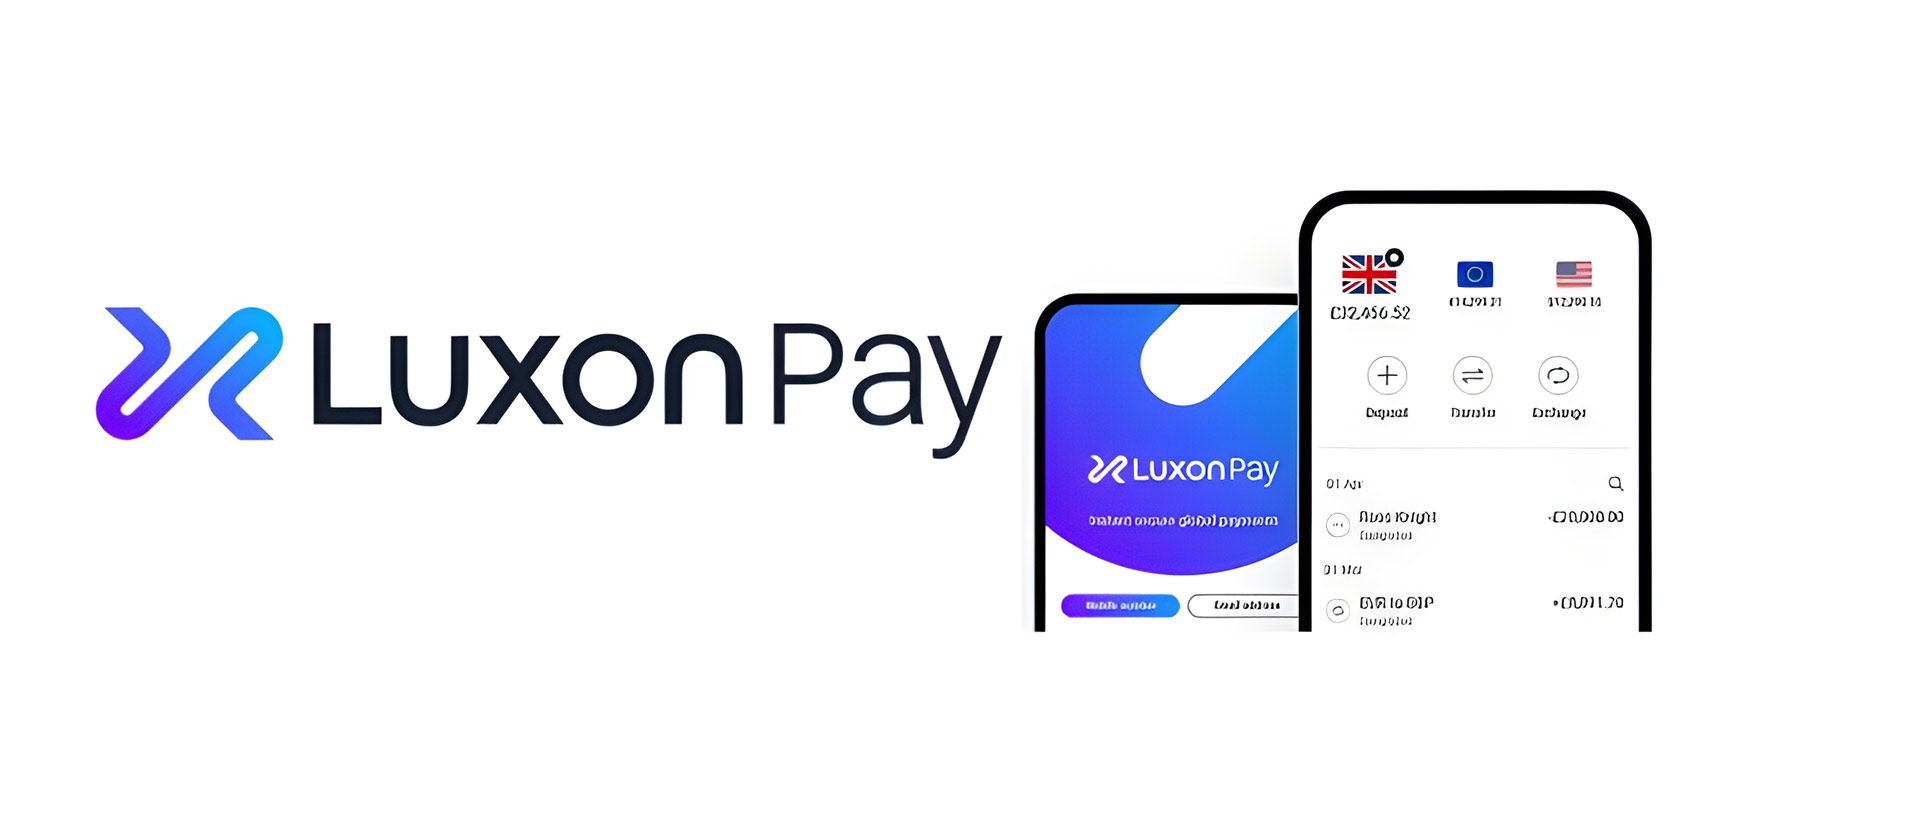 Nettcasinoer som godtar Luxon Pay i Norge.